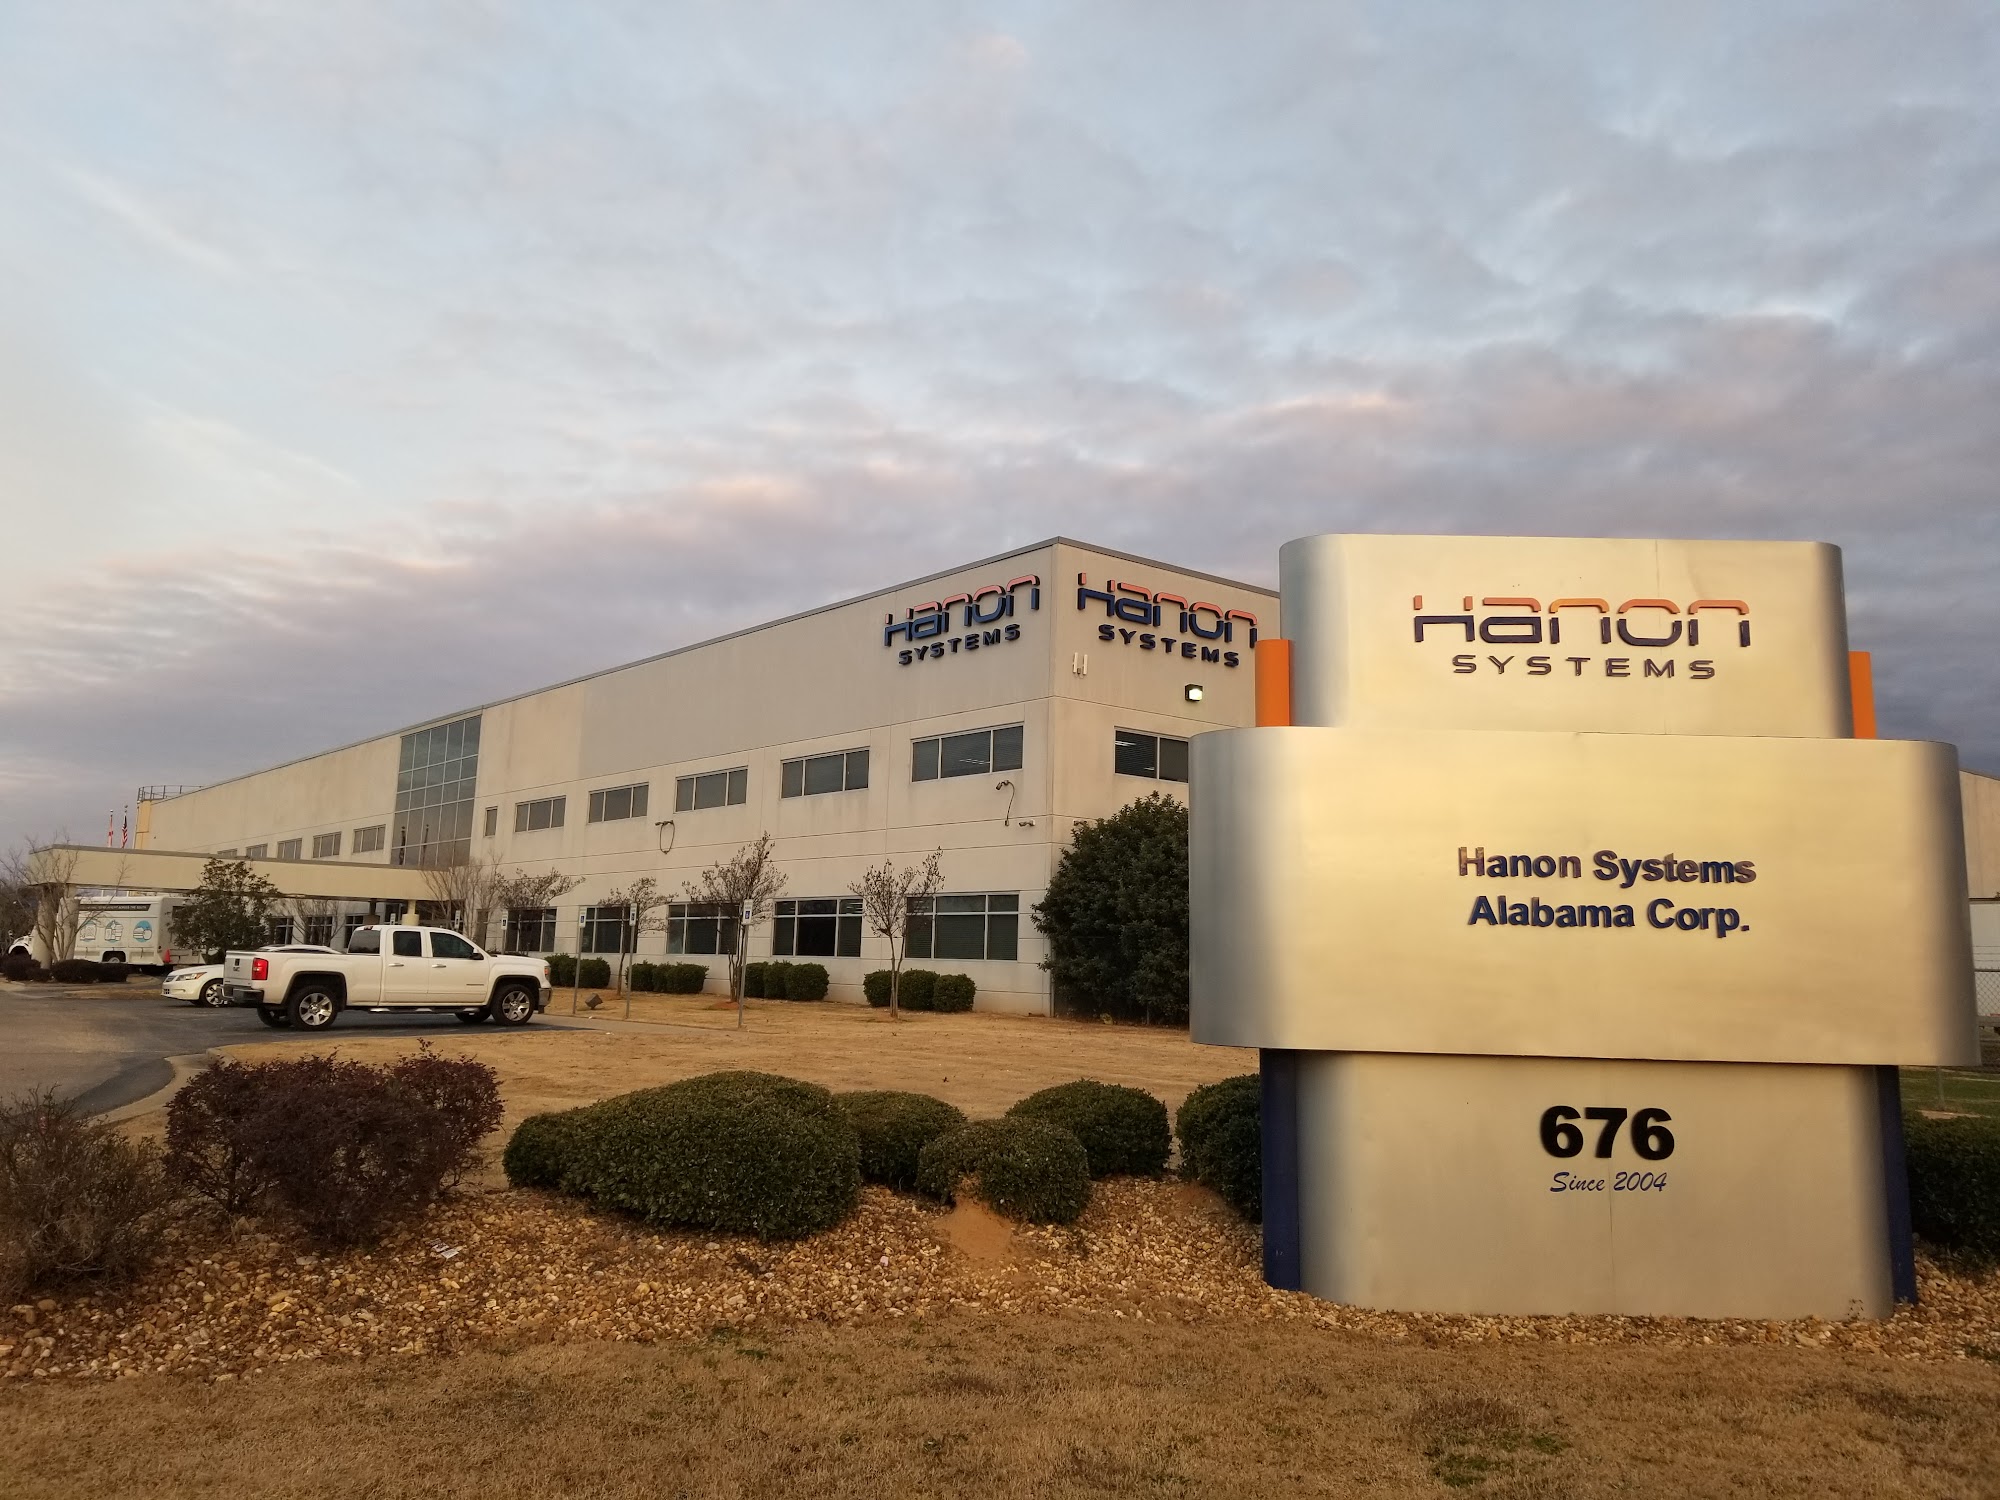 Hanon Systems Alabama Corp.